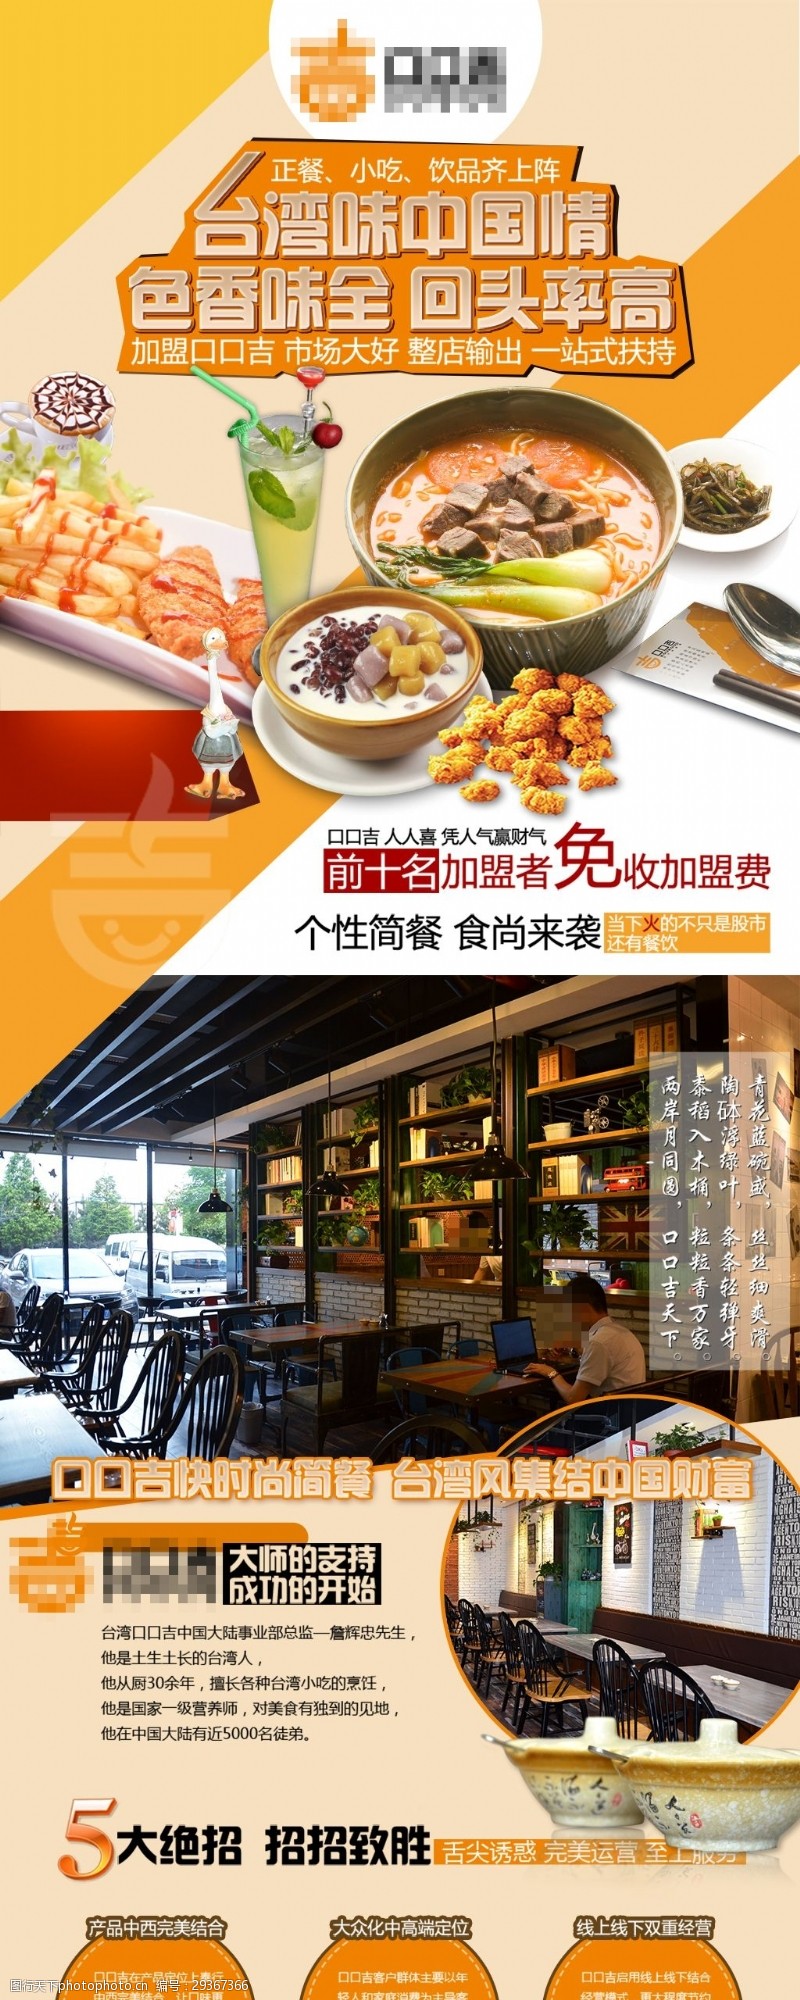 台湾小吃台湾味中国情美食专题网页psd分层素材